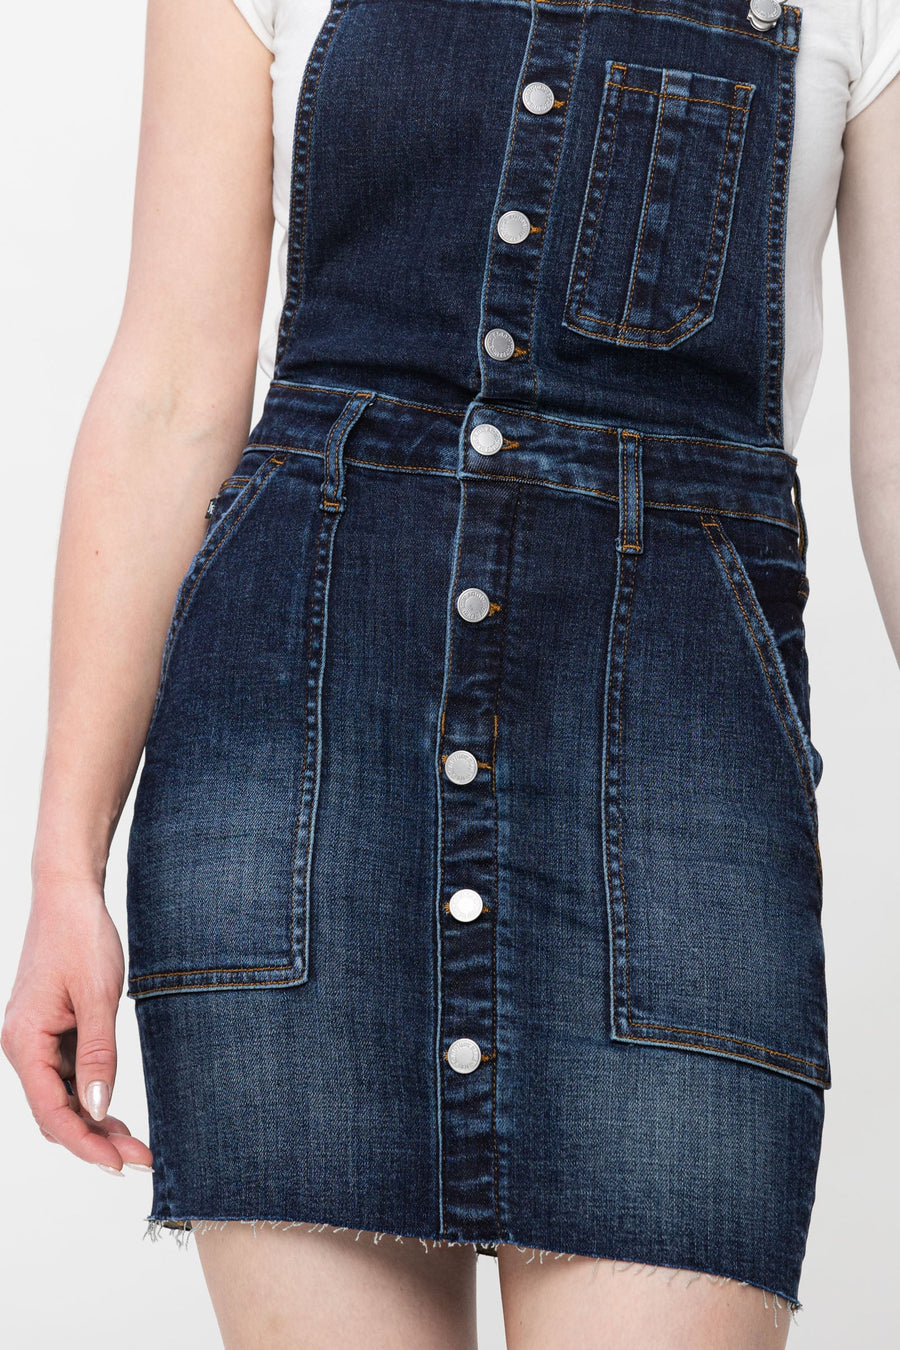 Nia | HIgh Waist Denim Overall Skirt (Judy Blue Style 2810)